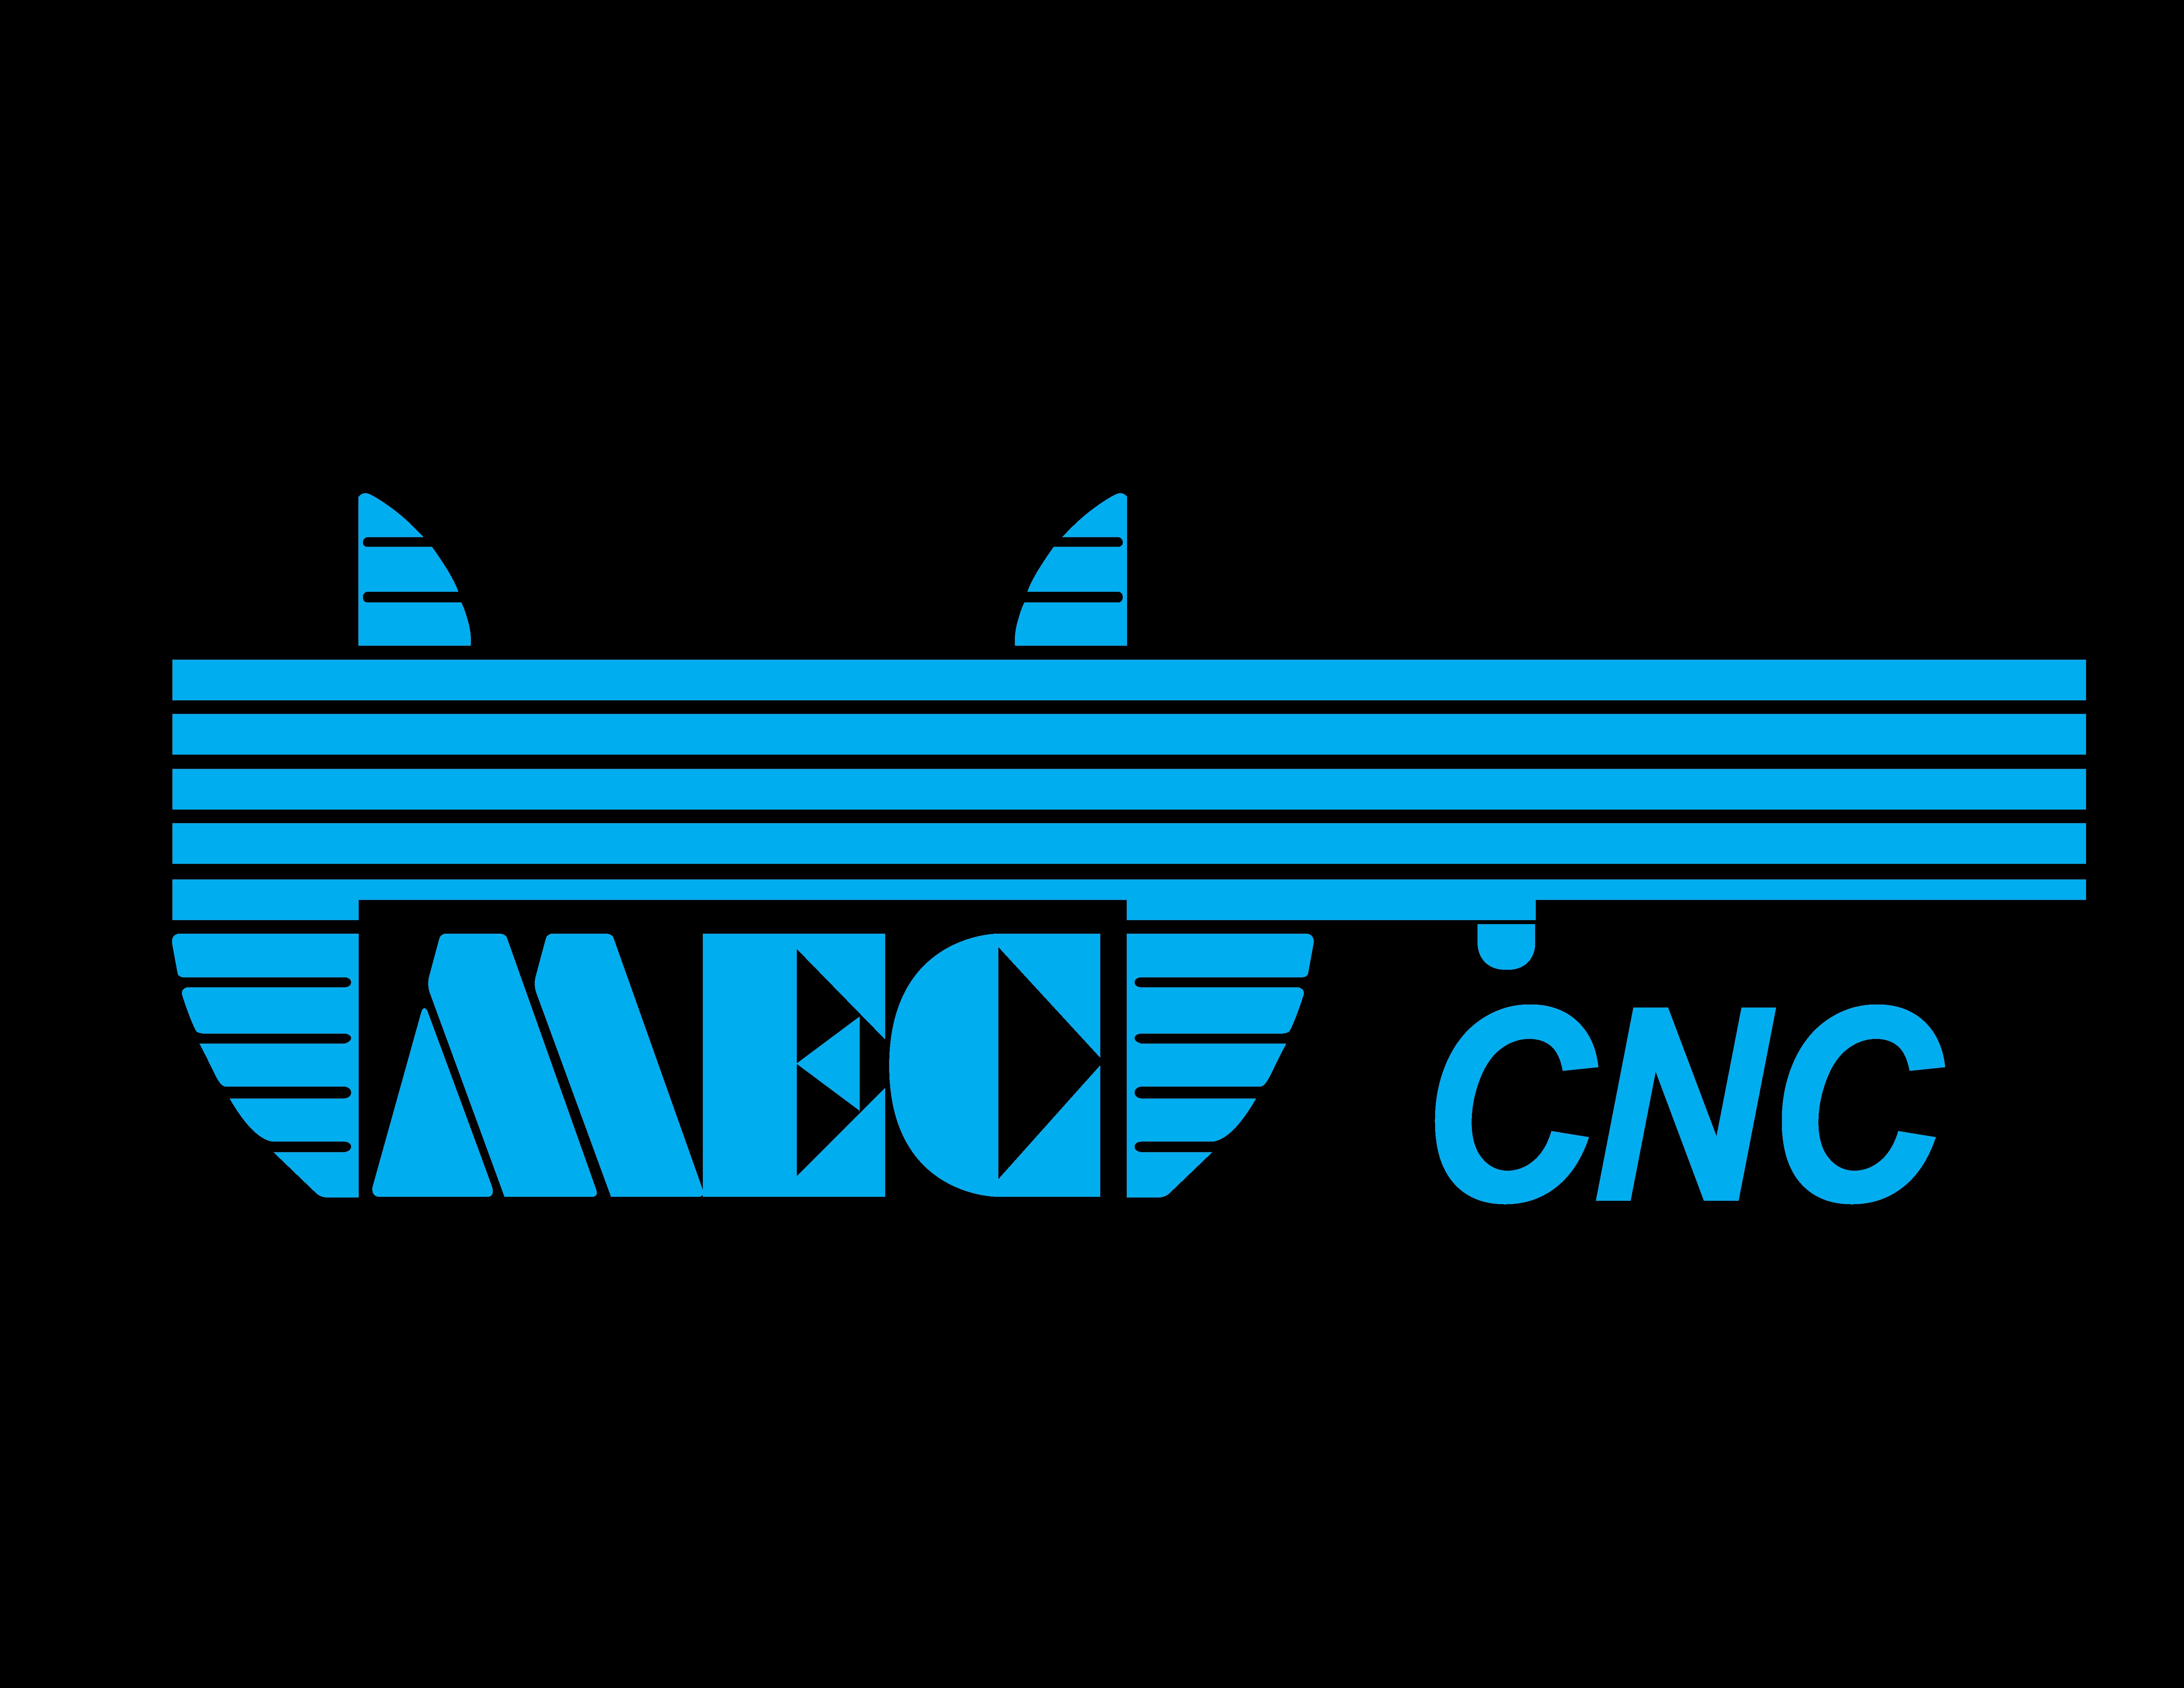 MEC CNC